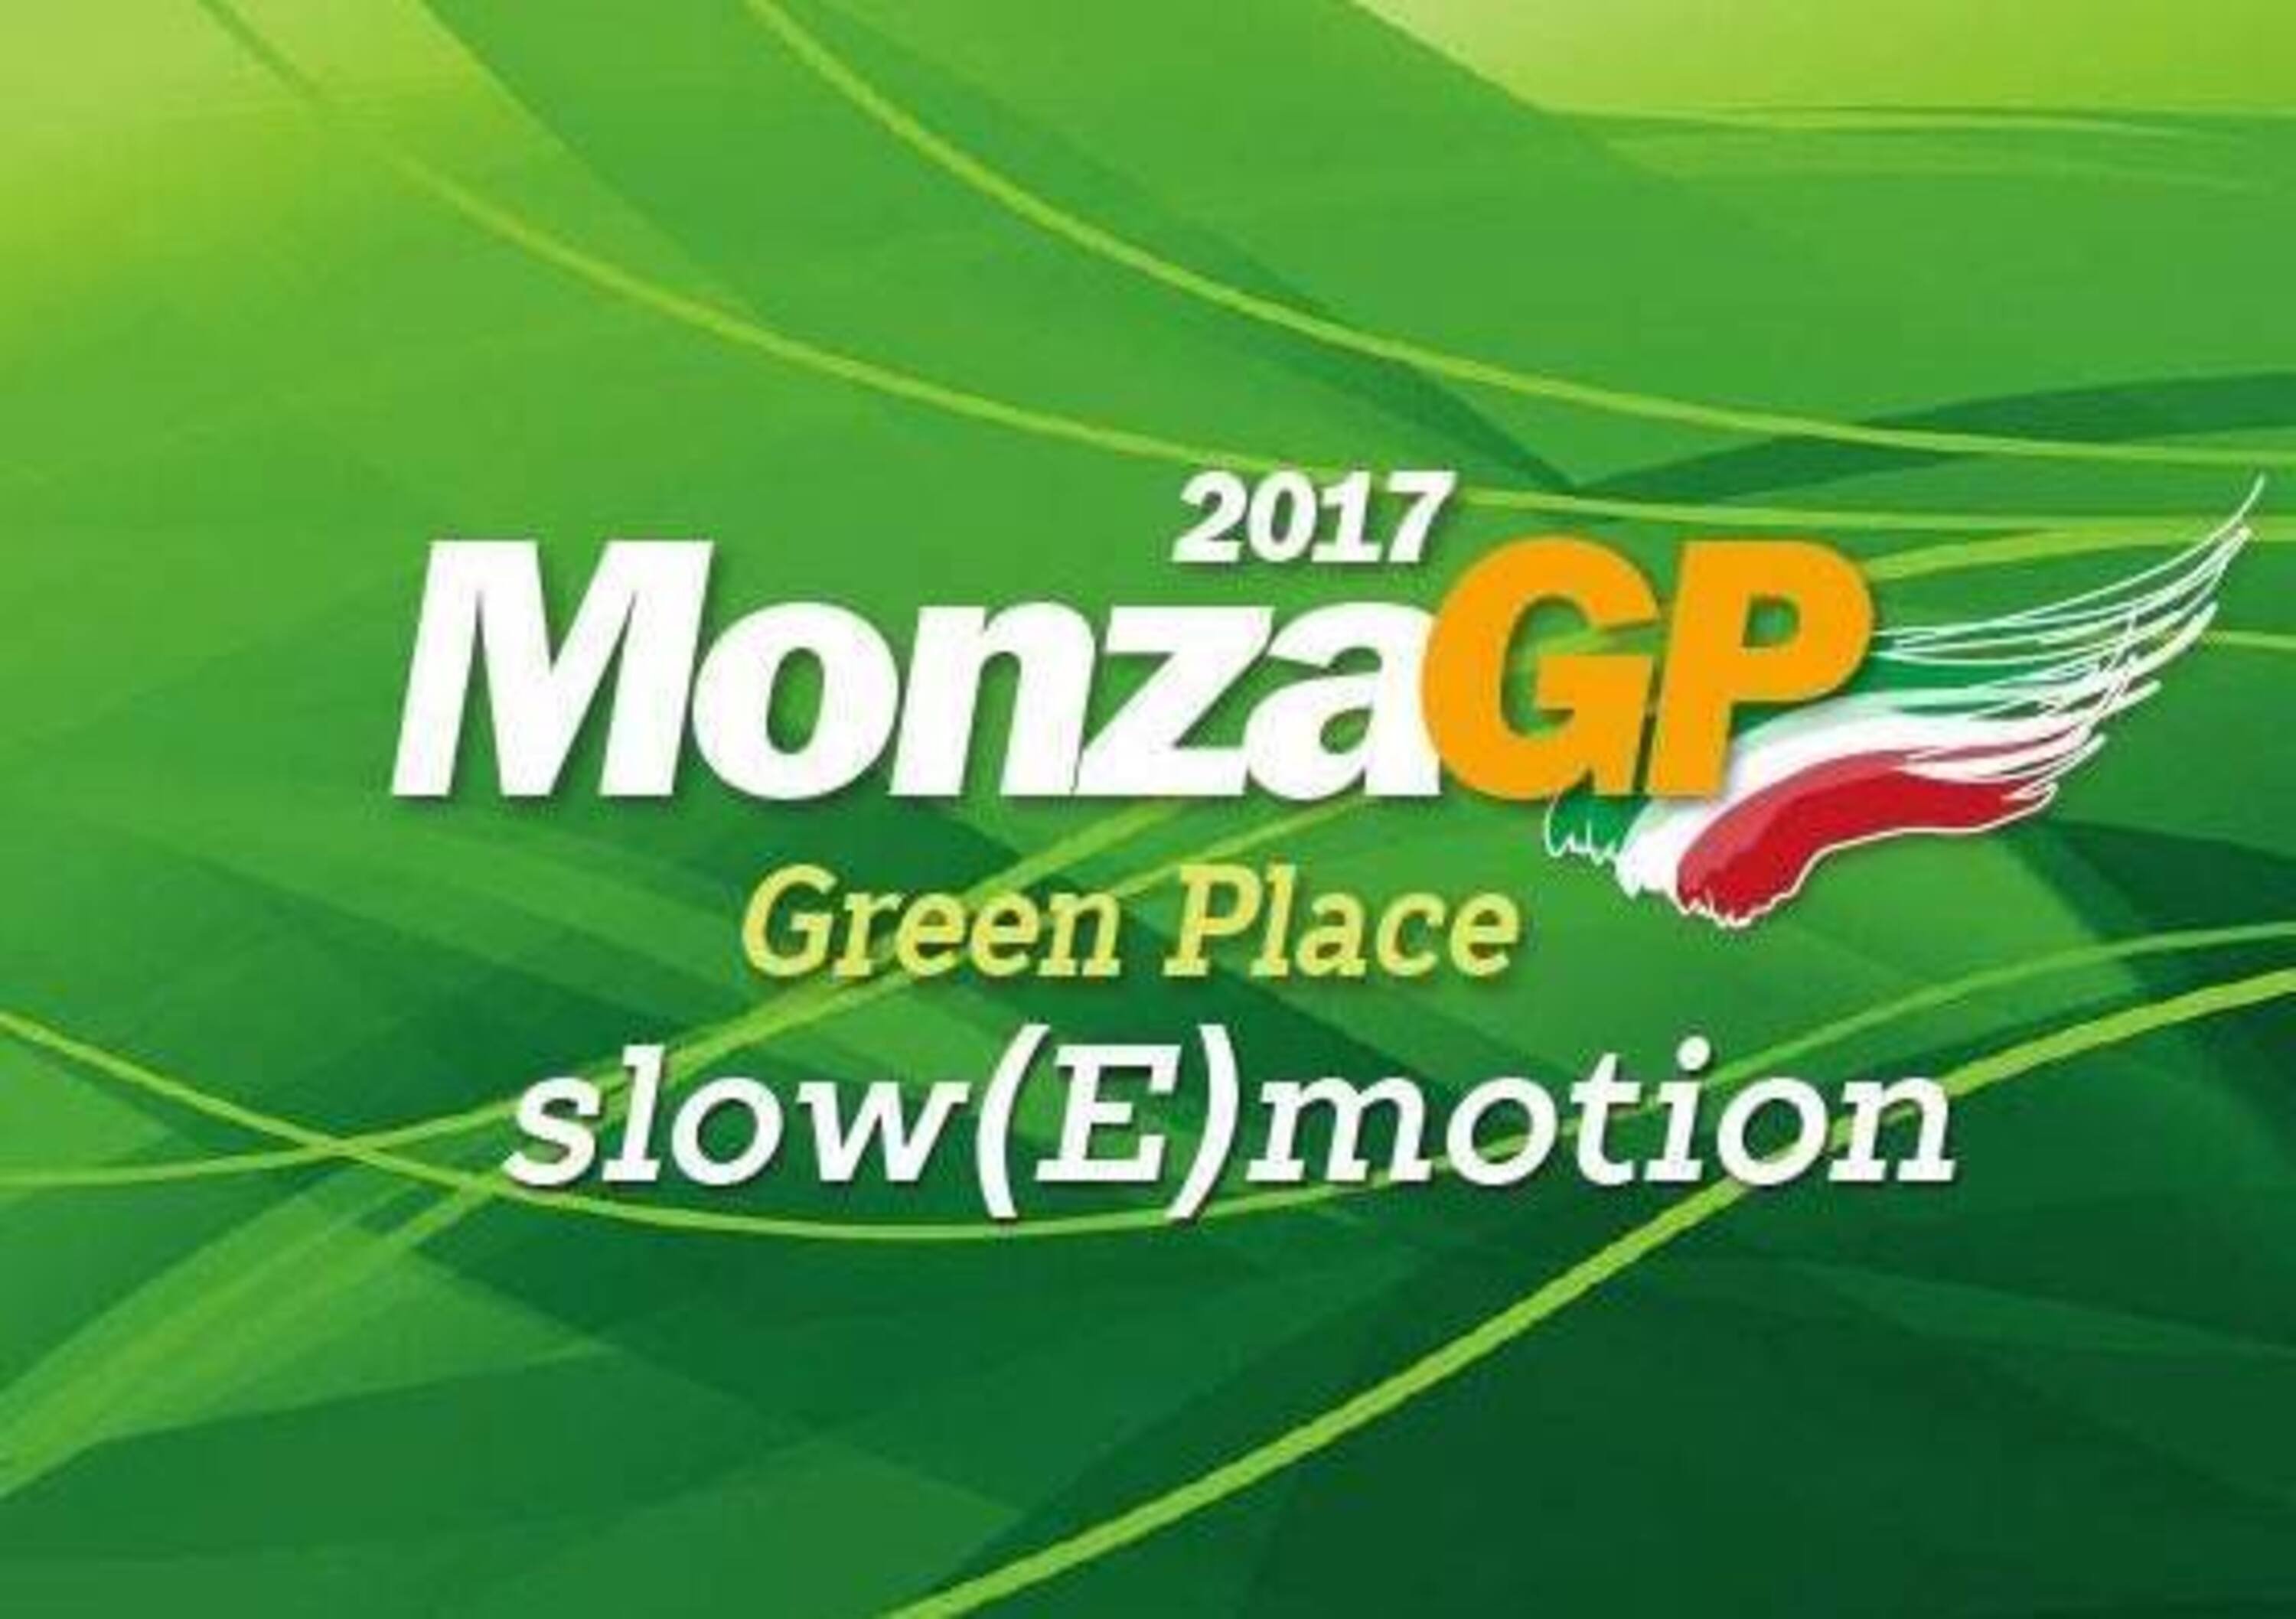 GP Italia F1 2017, Monza: eventi in citt&agrave; con MonzaGP